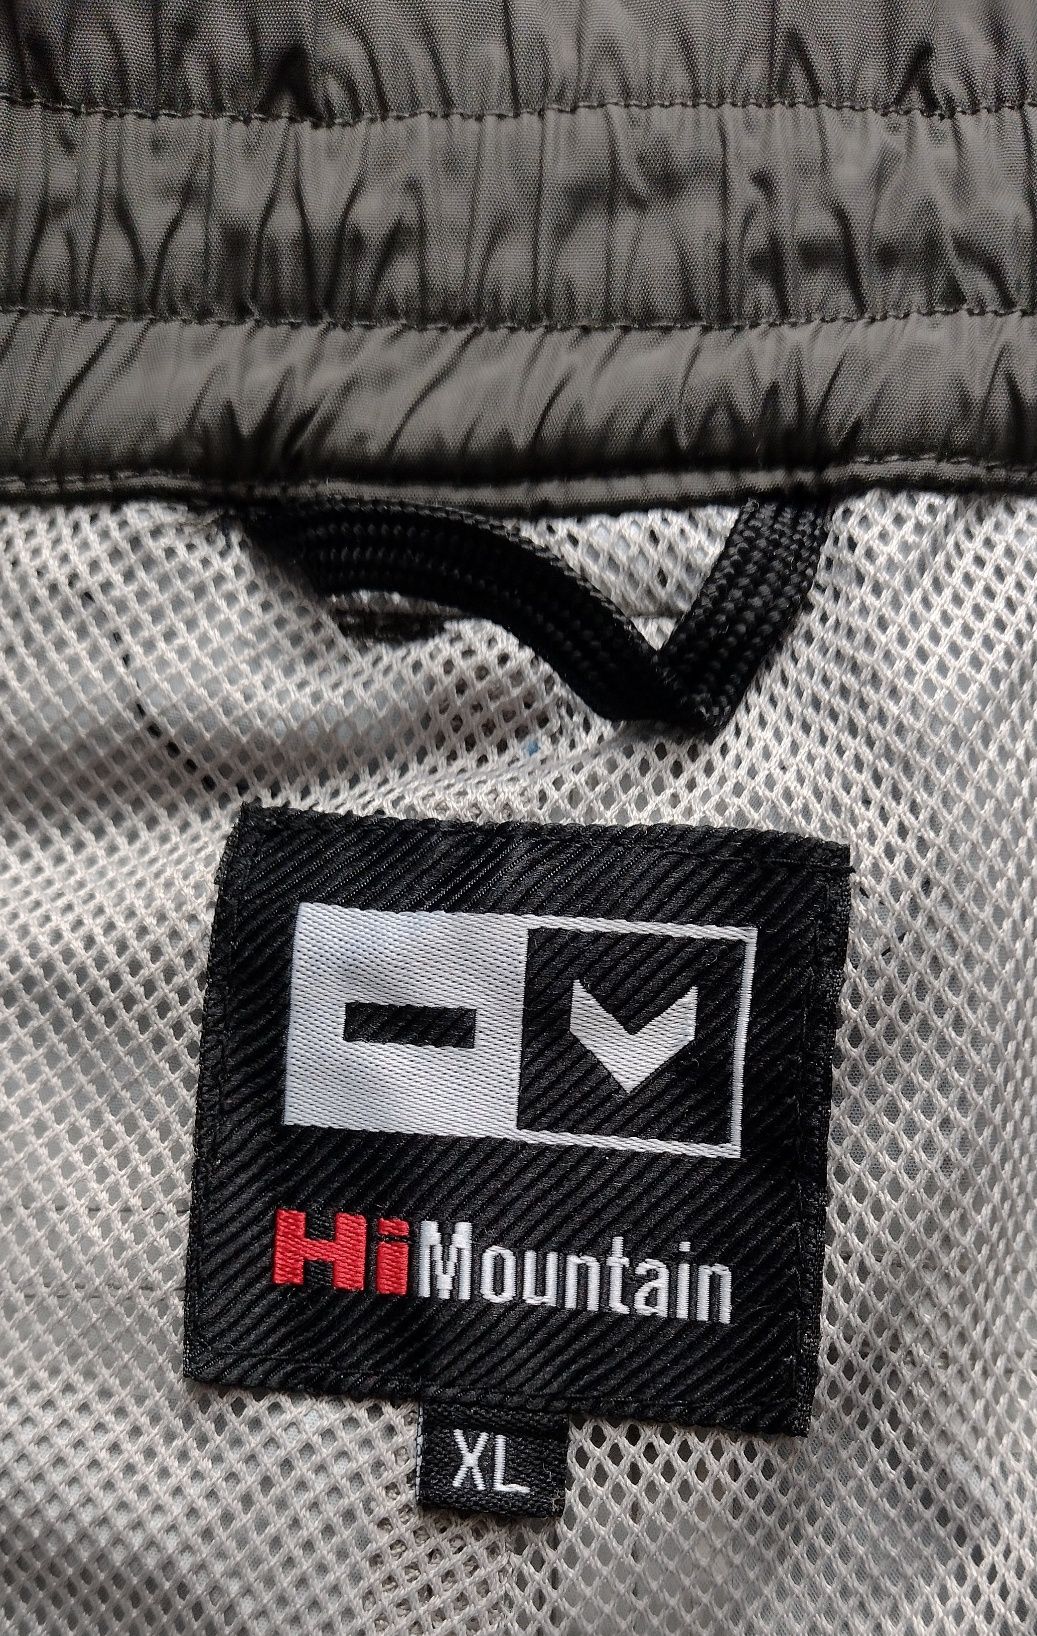 Spodnie narciarskie Hi Mountain hydro 5K, rozmiar XL